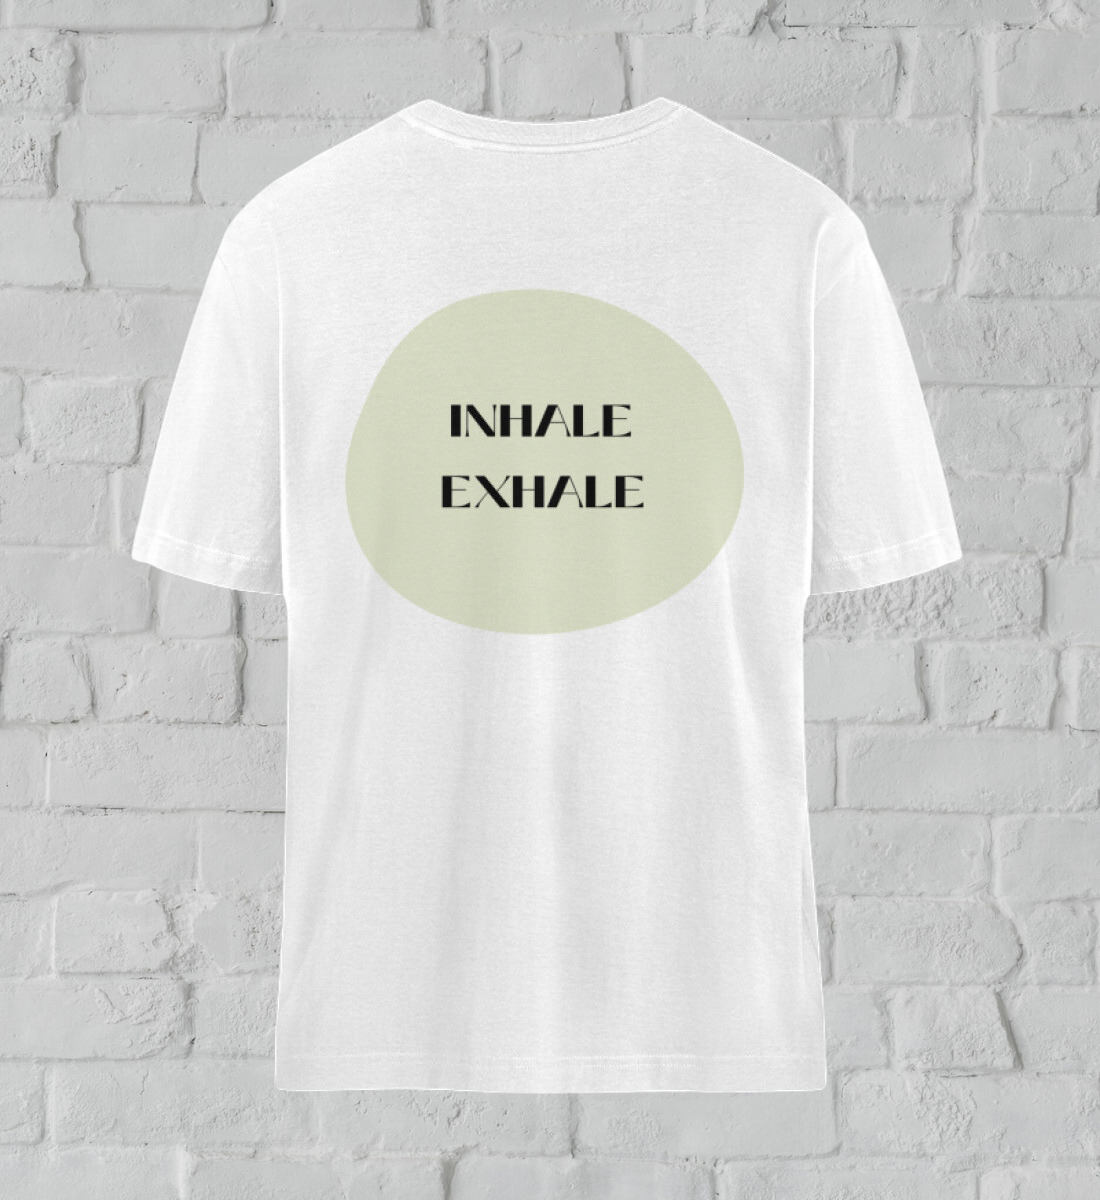 inhale exhale l yoga shirt weiß l nachhaltiges t-shirt l bio yoga kleidung l grüne und umweltfreundliche mode online shoppen